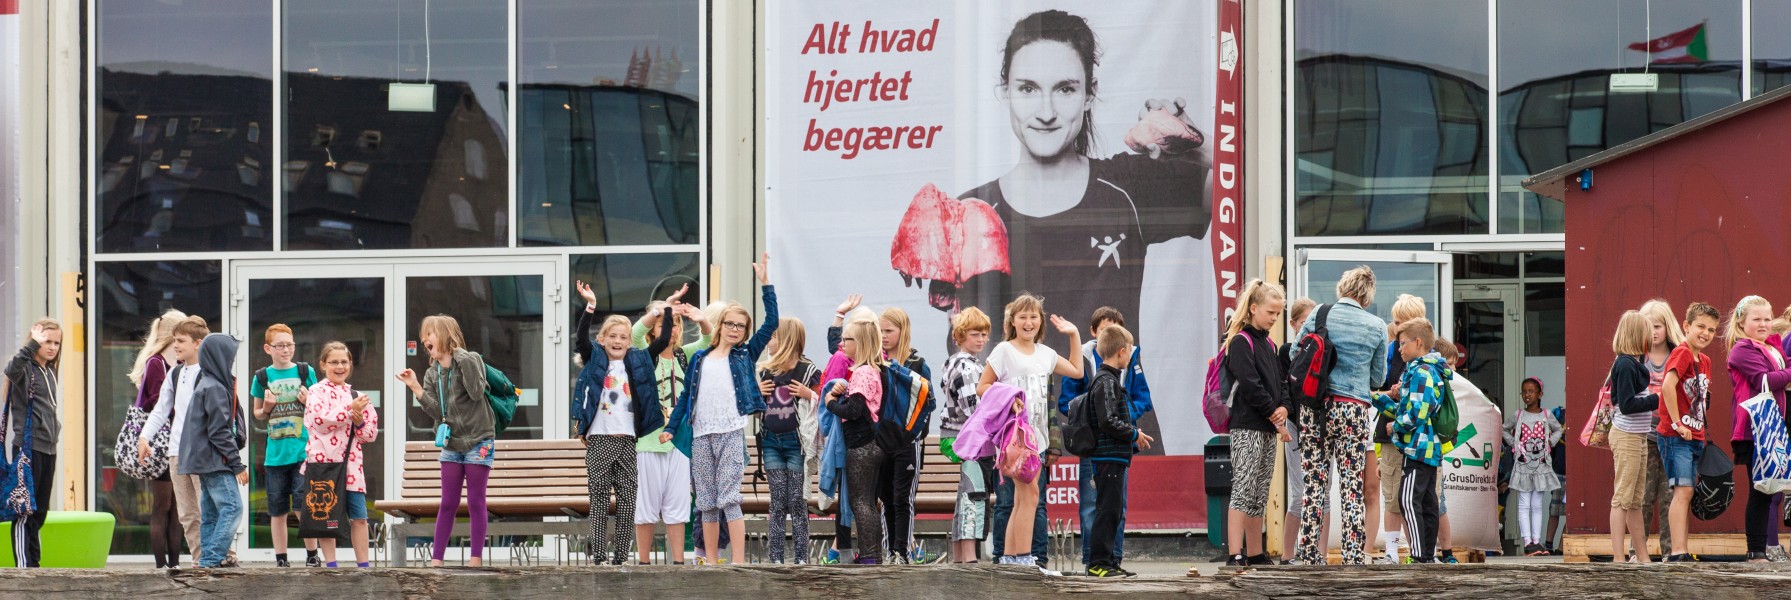 kids in Copenhagen, Denmark, June 2014, picture 75